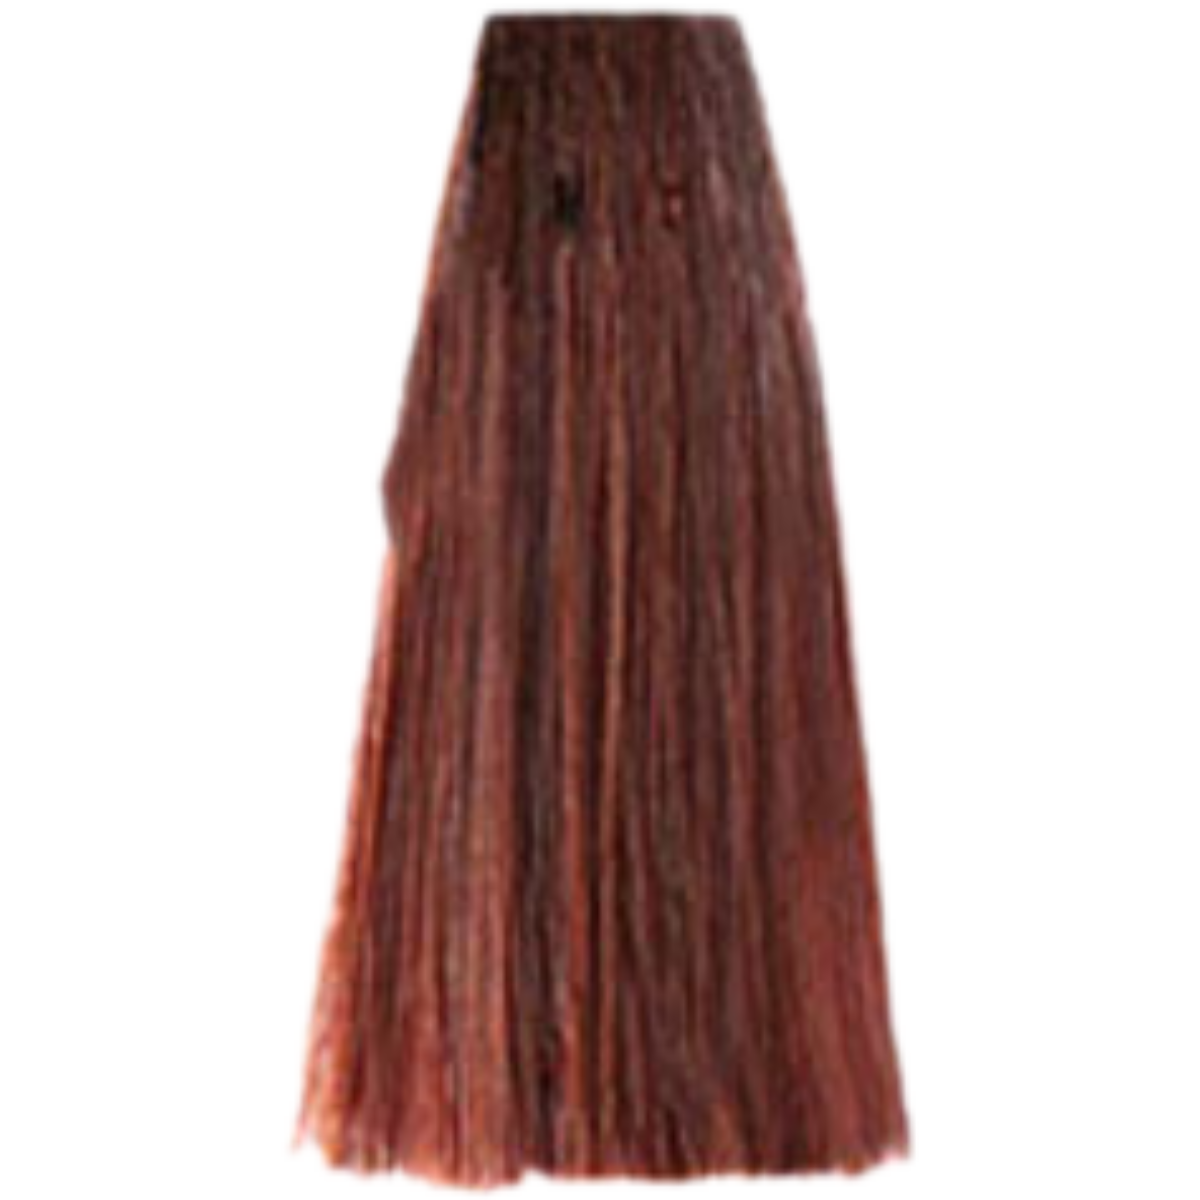 צבע שיער 6.45 DARK COPPER MAHOGANY BLONDE פארמויטה FarmaVita צבע לשיער 100 גרם